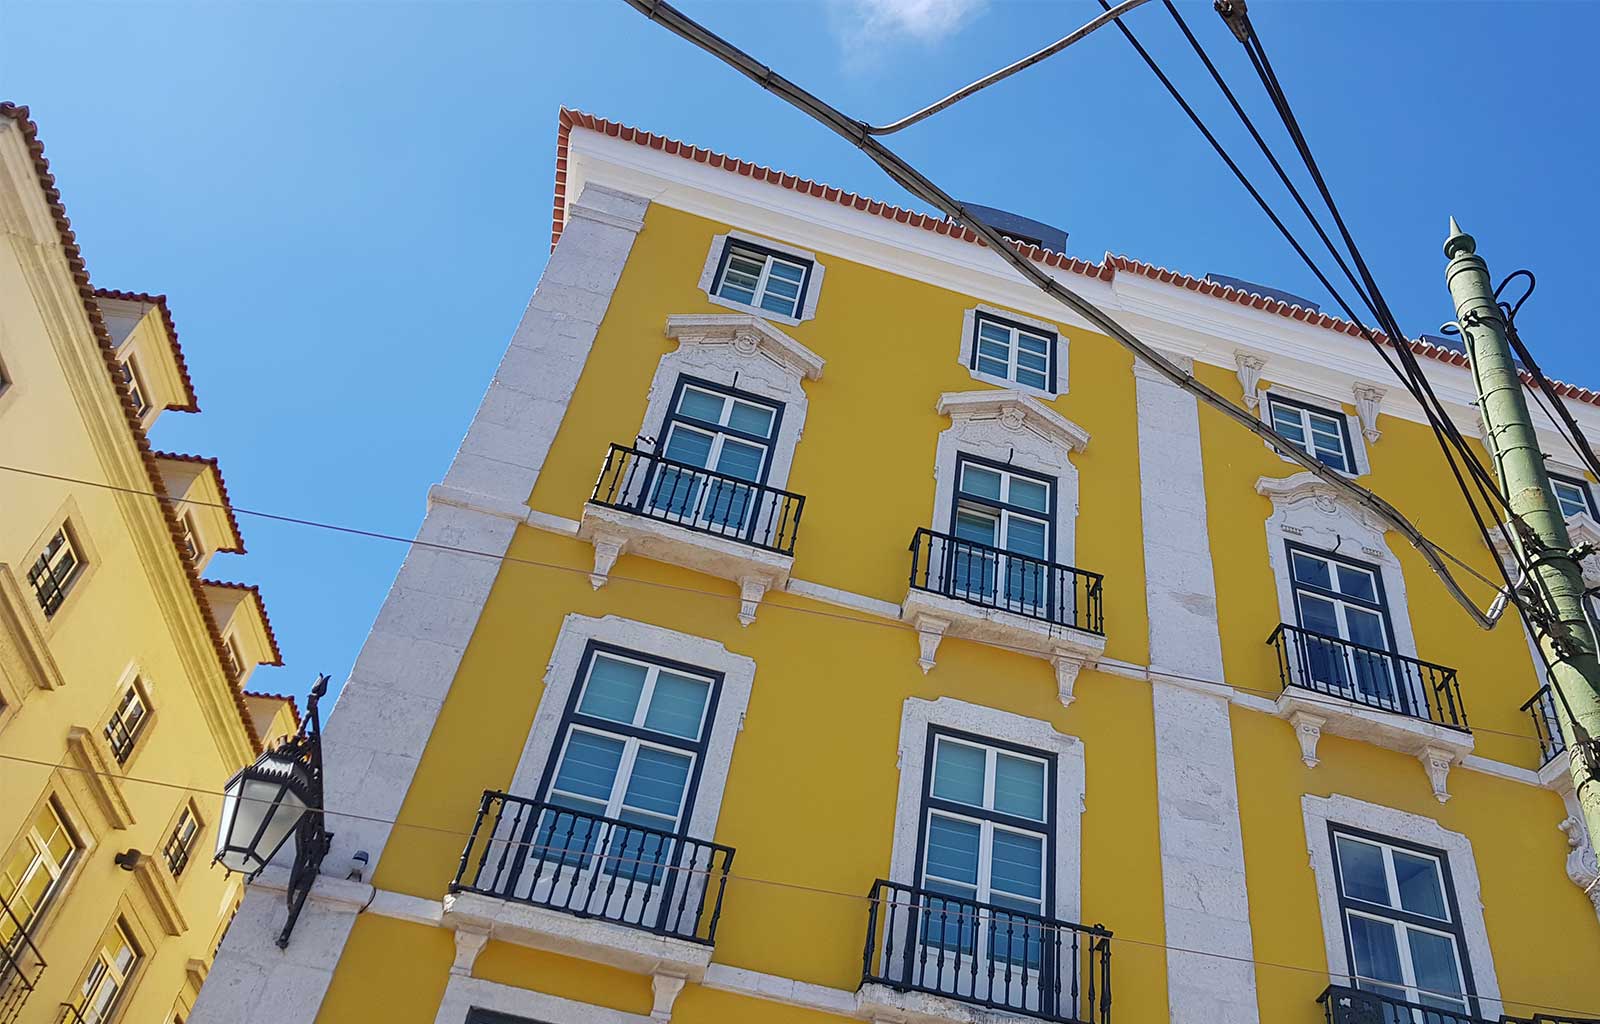 Lisbonne maison jaune